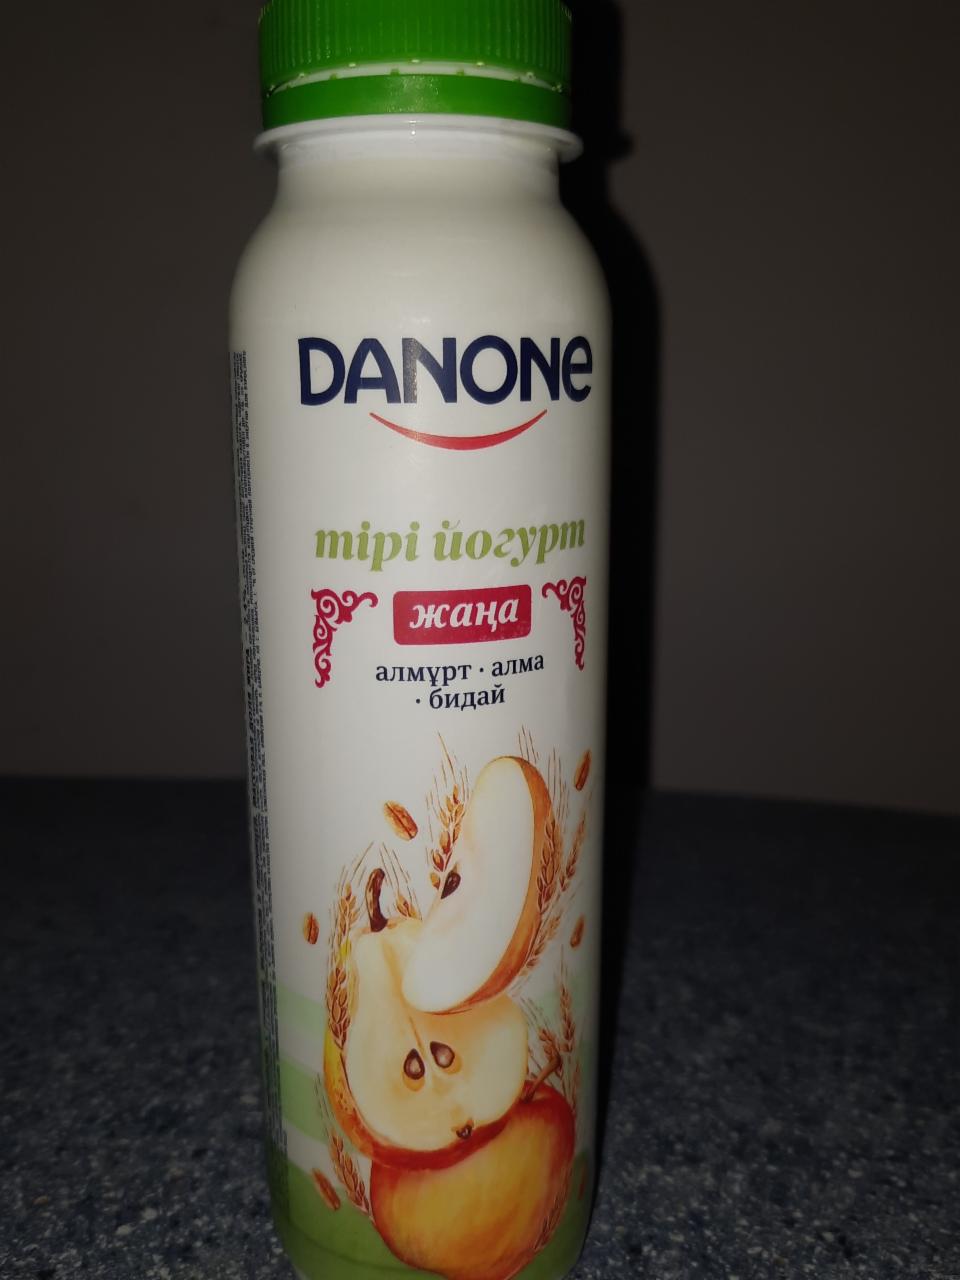 Фото - Живой йогурт груша, яблоко, пшеница Danone